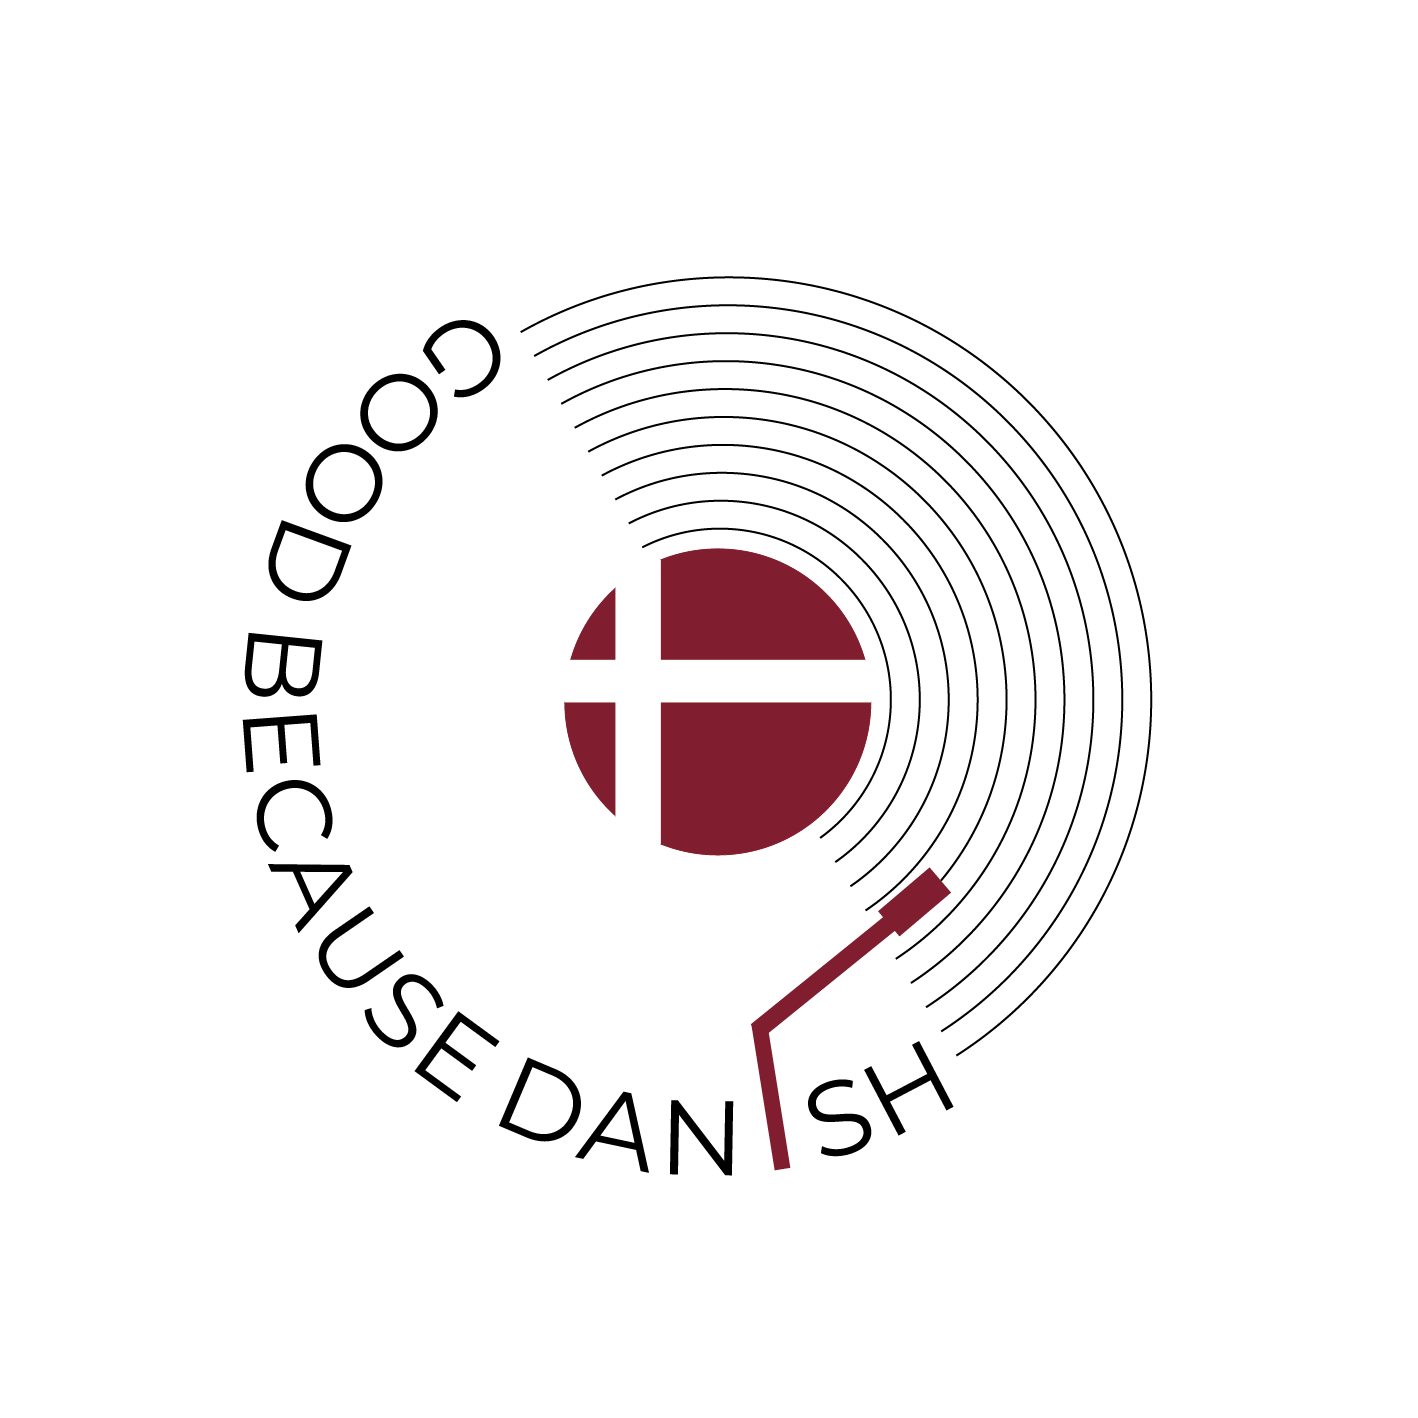 Good because Danish